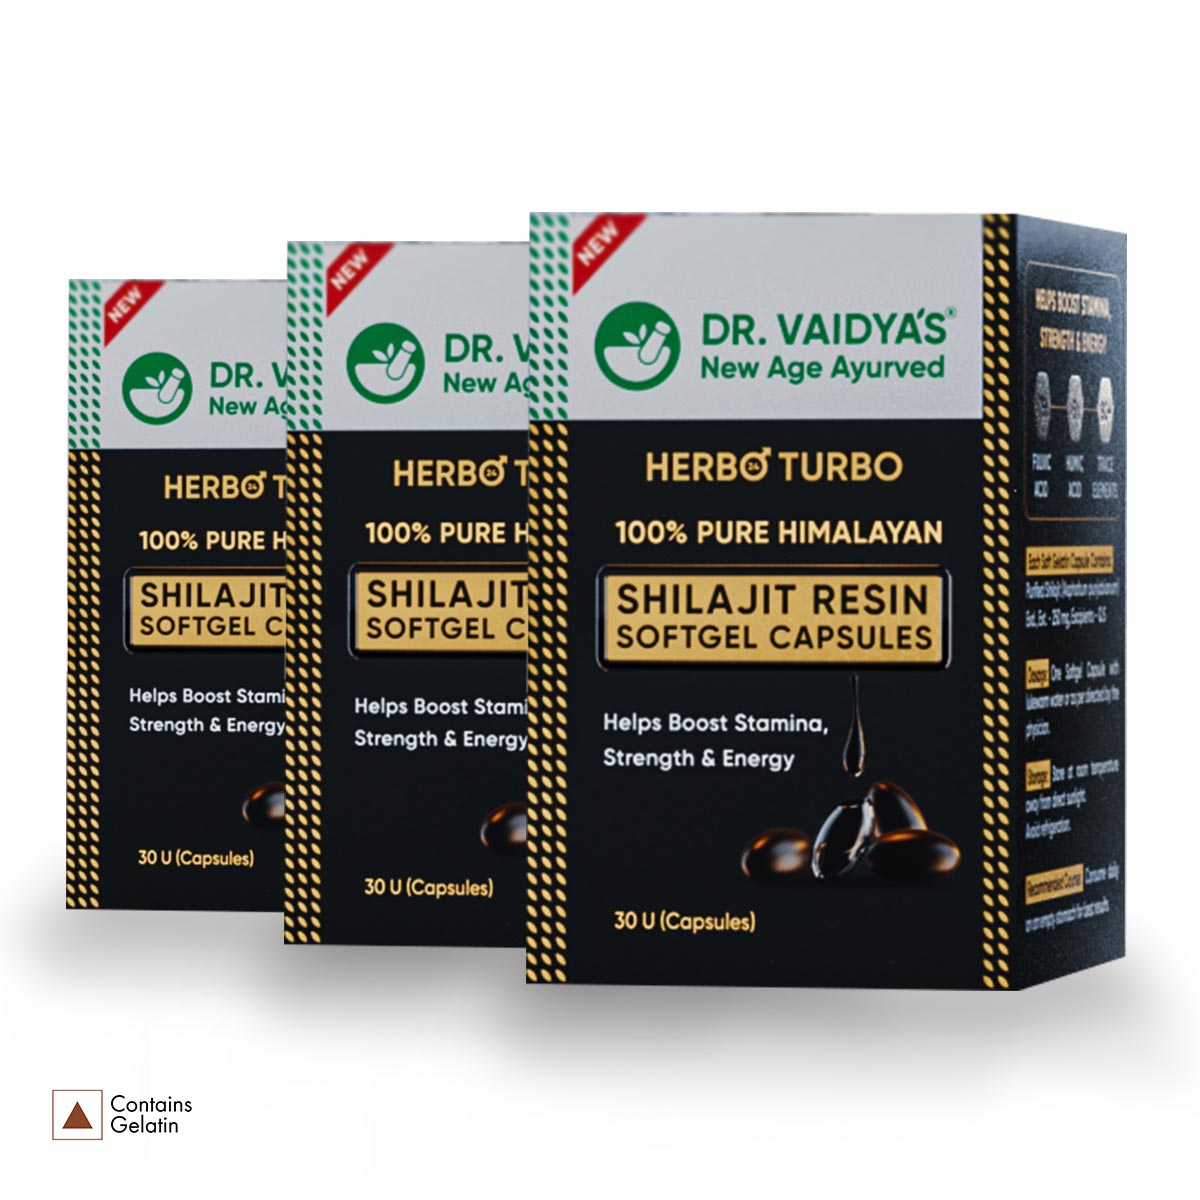 Herbo24Turbo Shilajit Resin SoftGel Capsules: 100% Effectiveness of Shilajit Resin in Convenience of Softgel Capsules